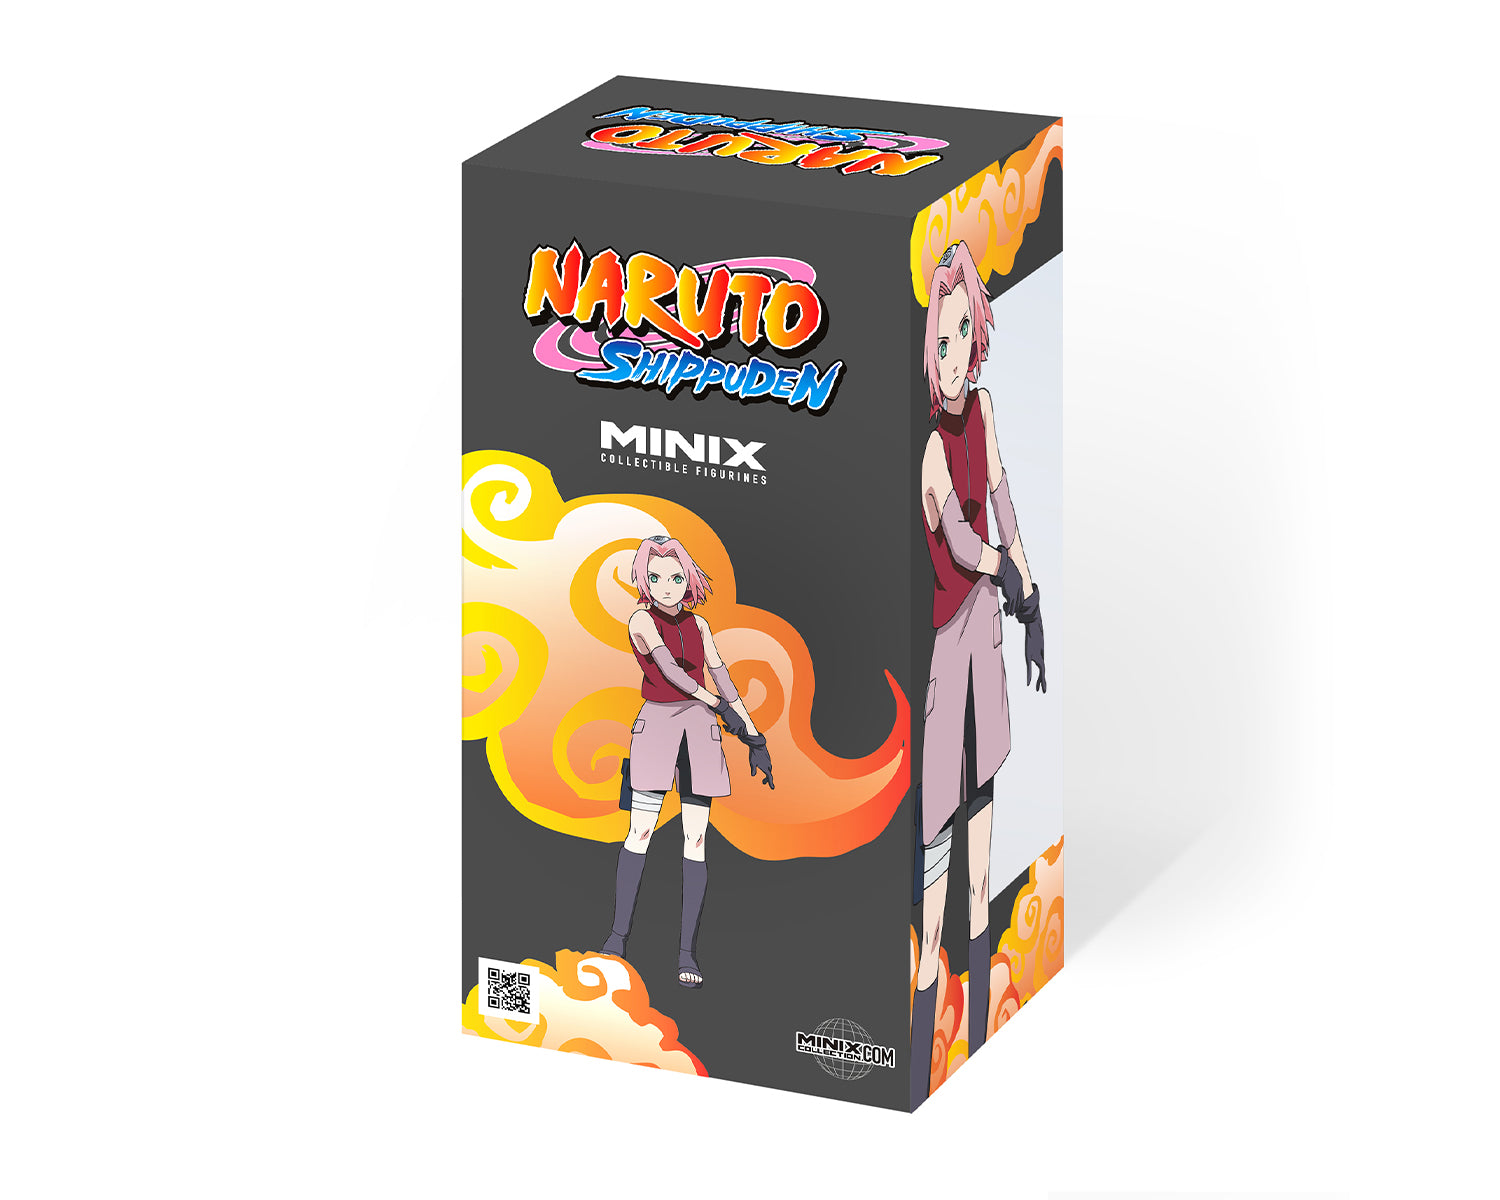 Minix -Animé -Naruto -Sakura -Figurine -12 cm